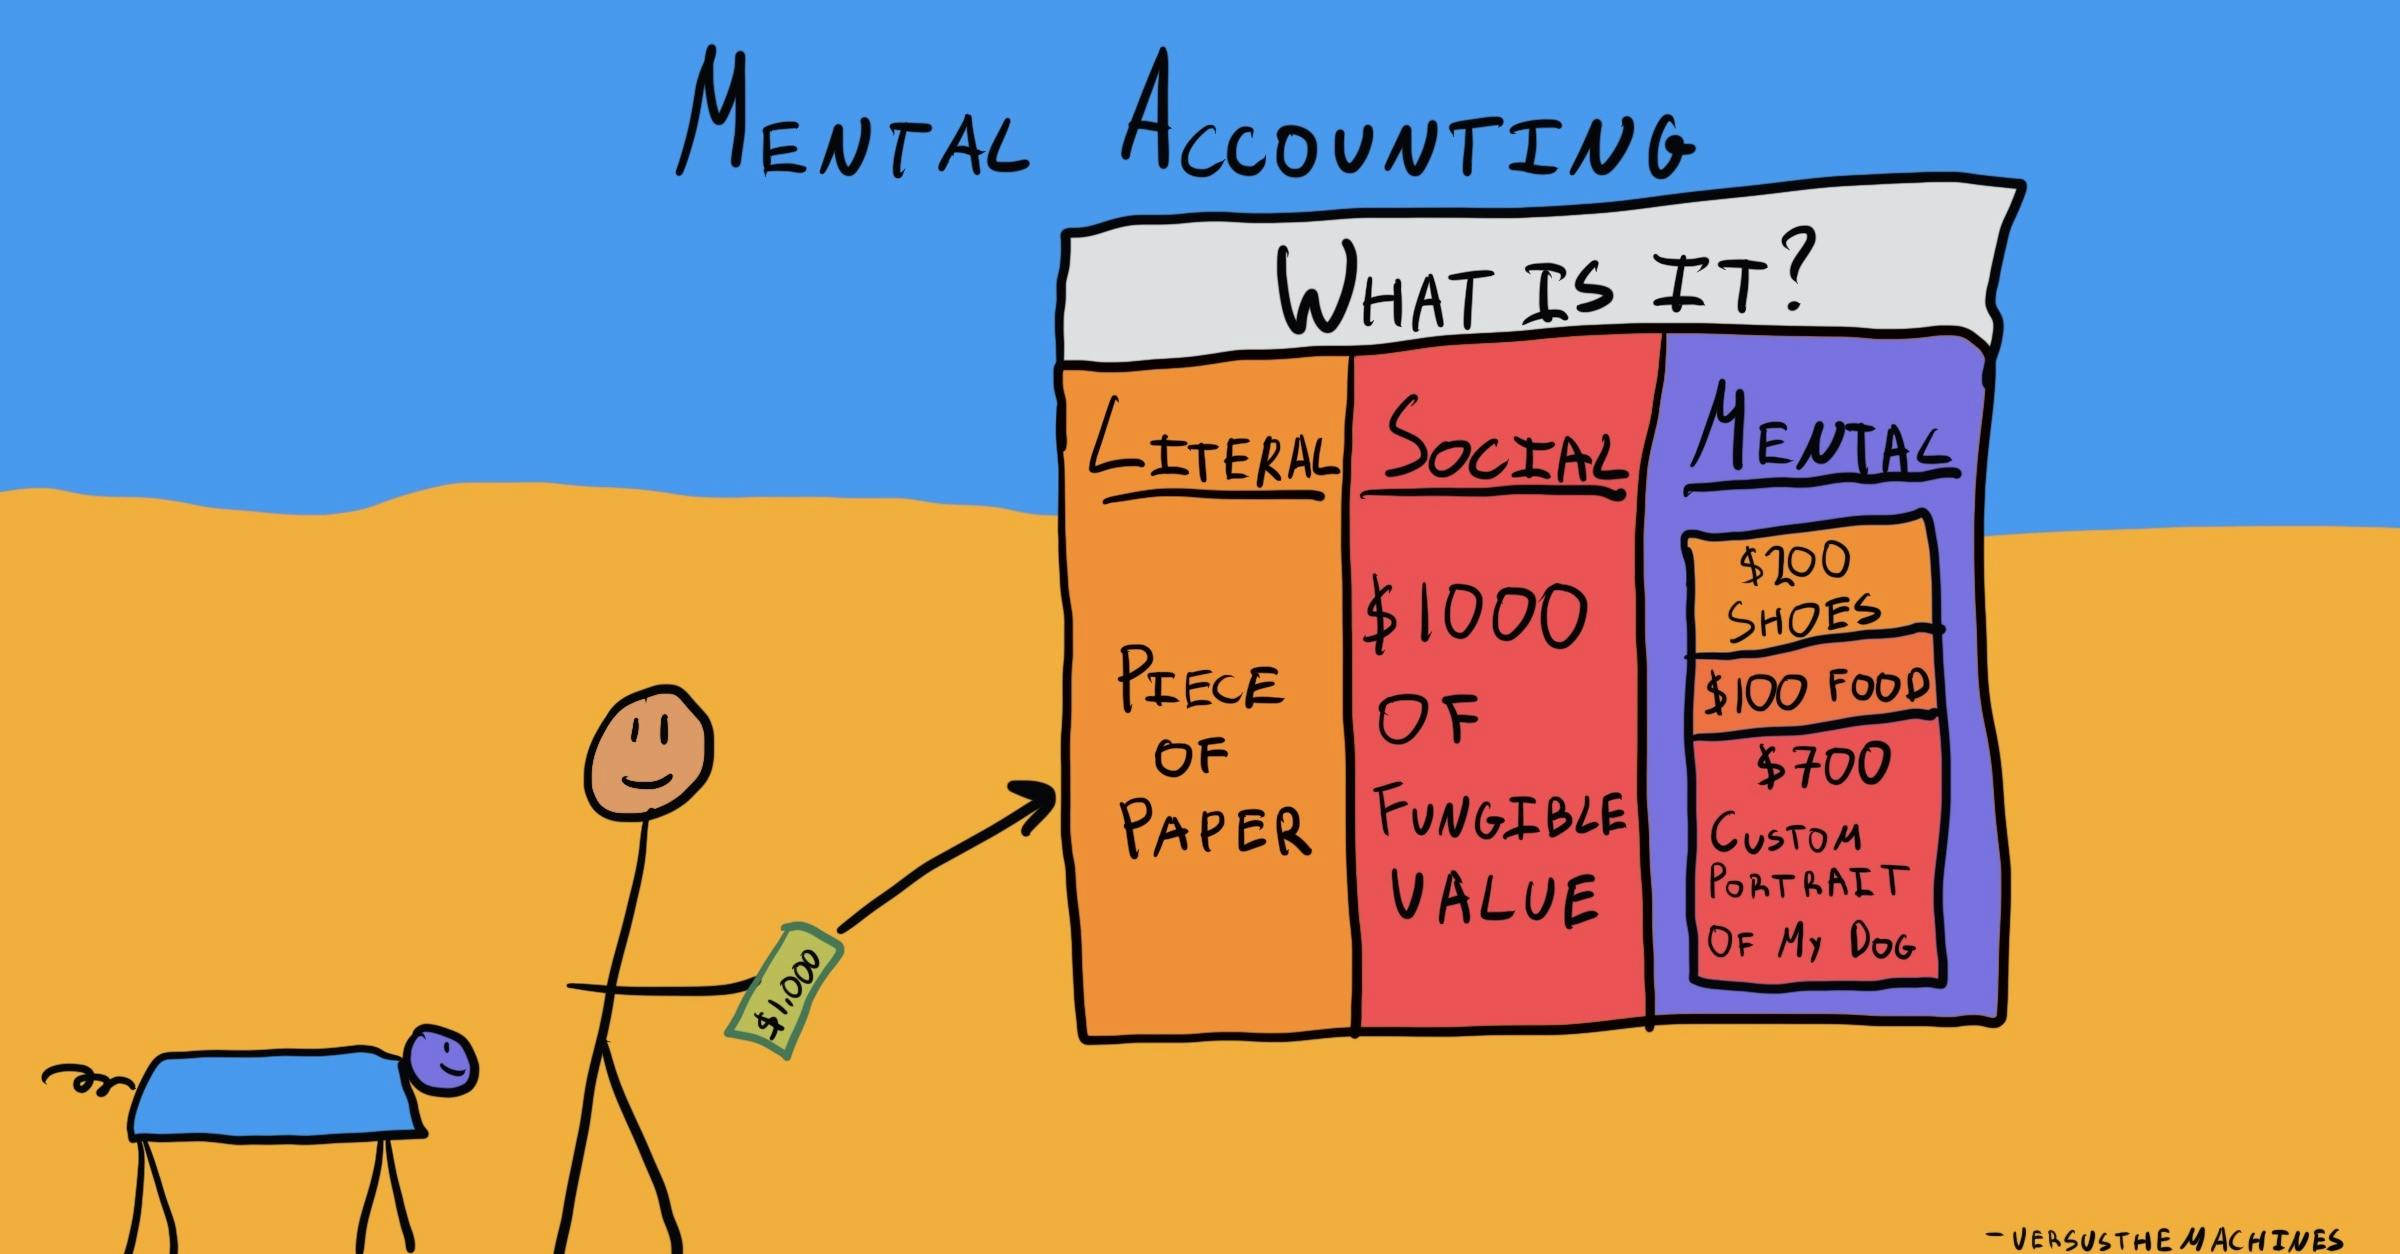 Mental accounting